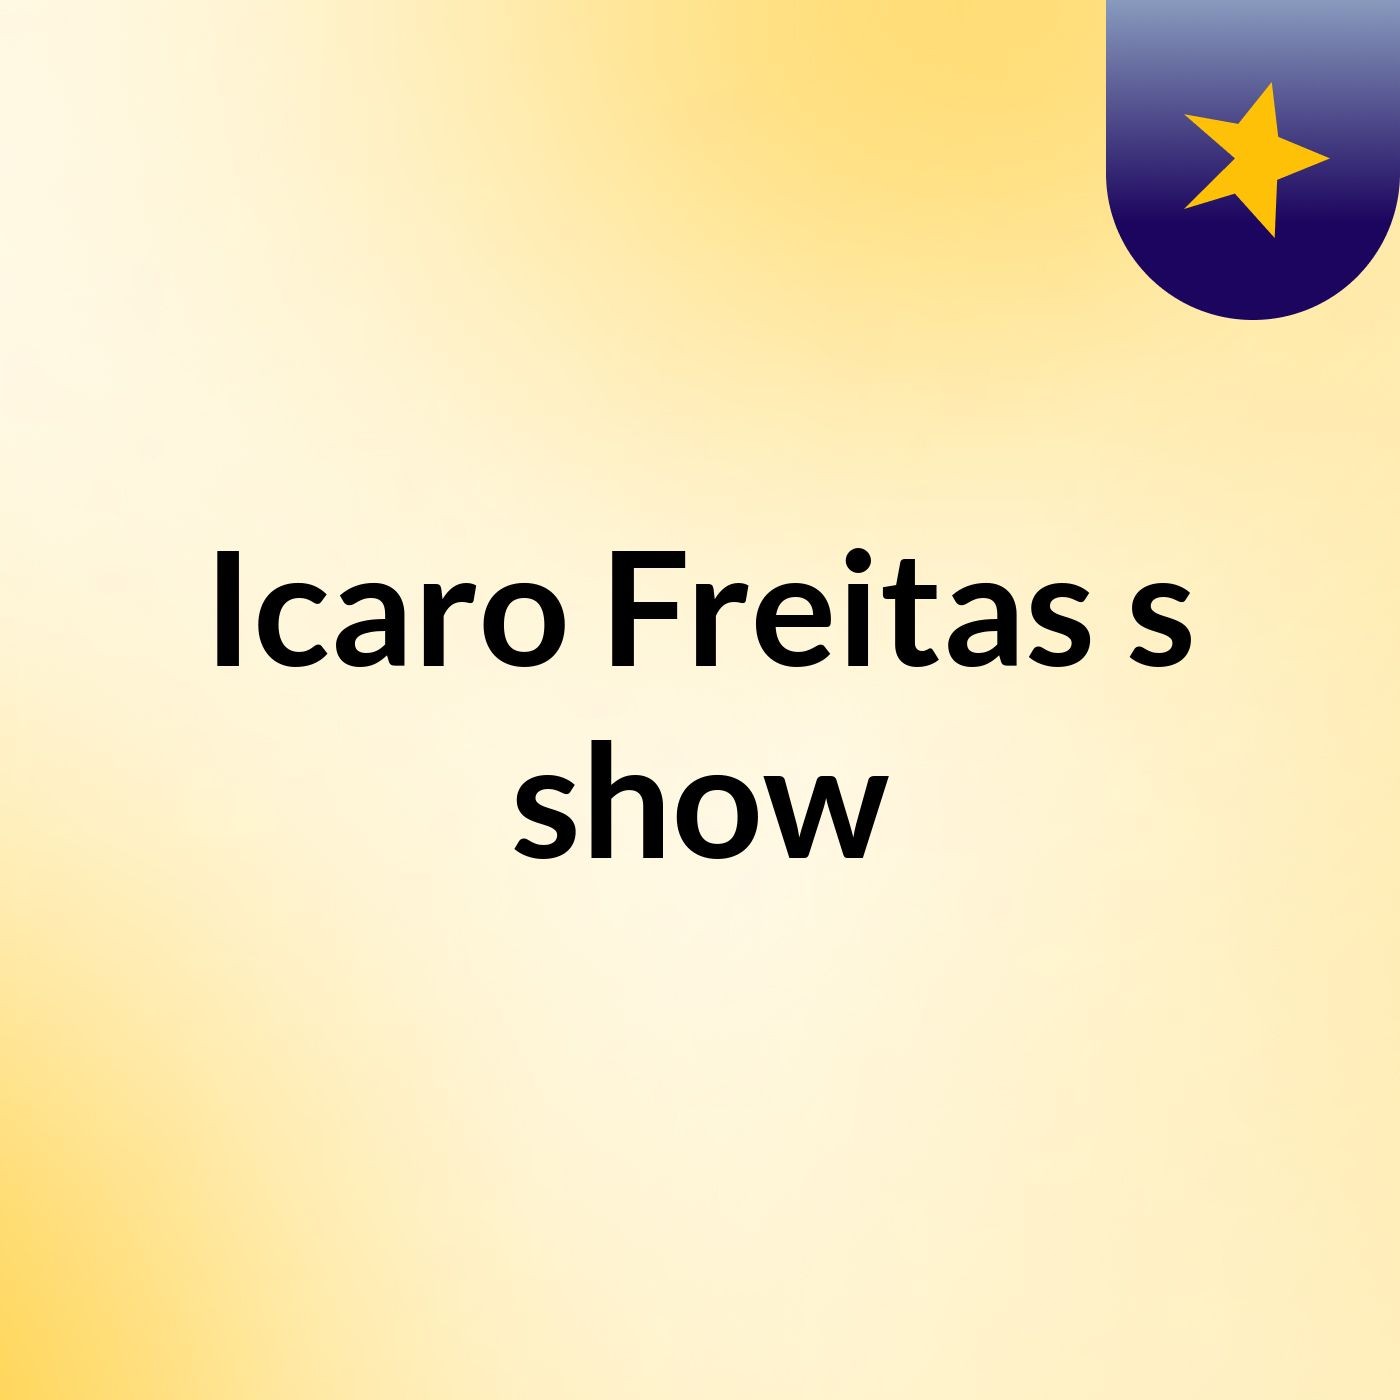 Icaro Freitas's show